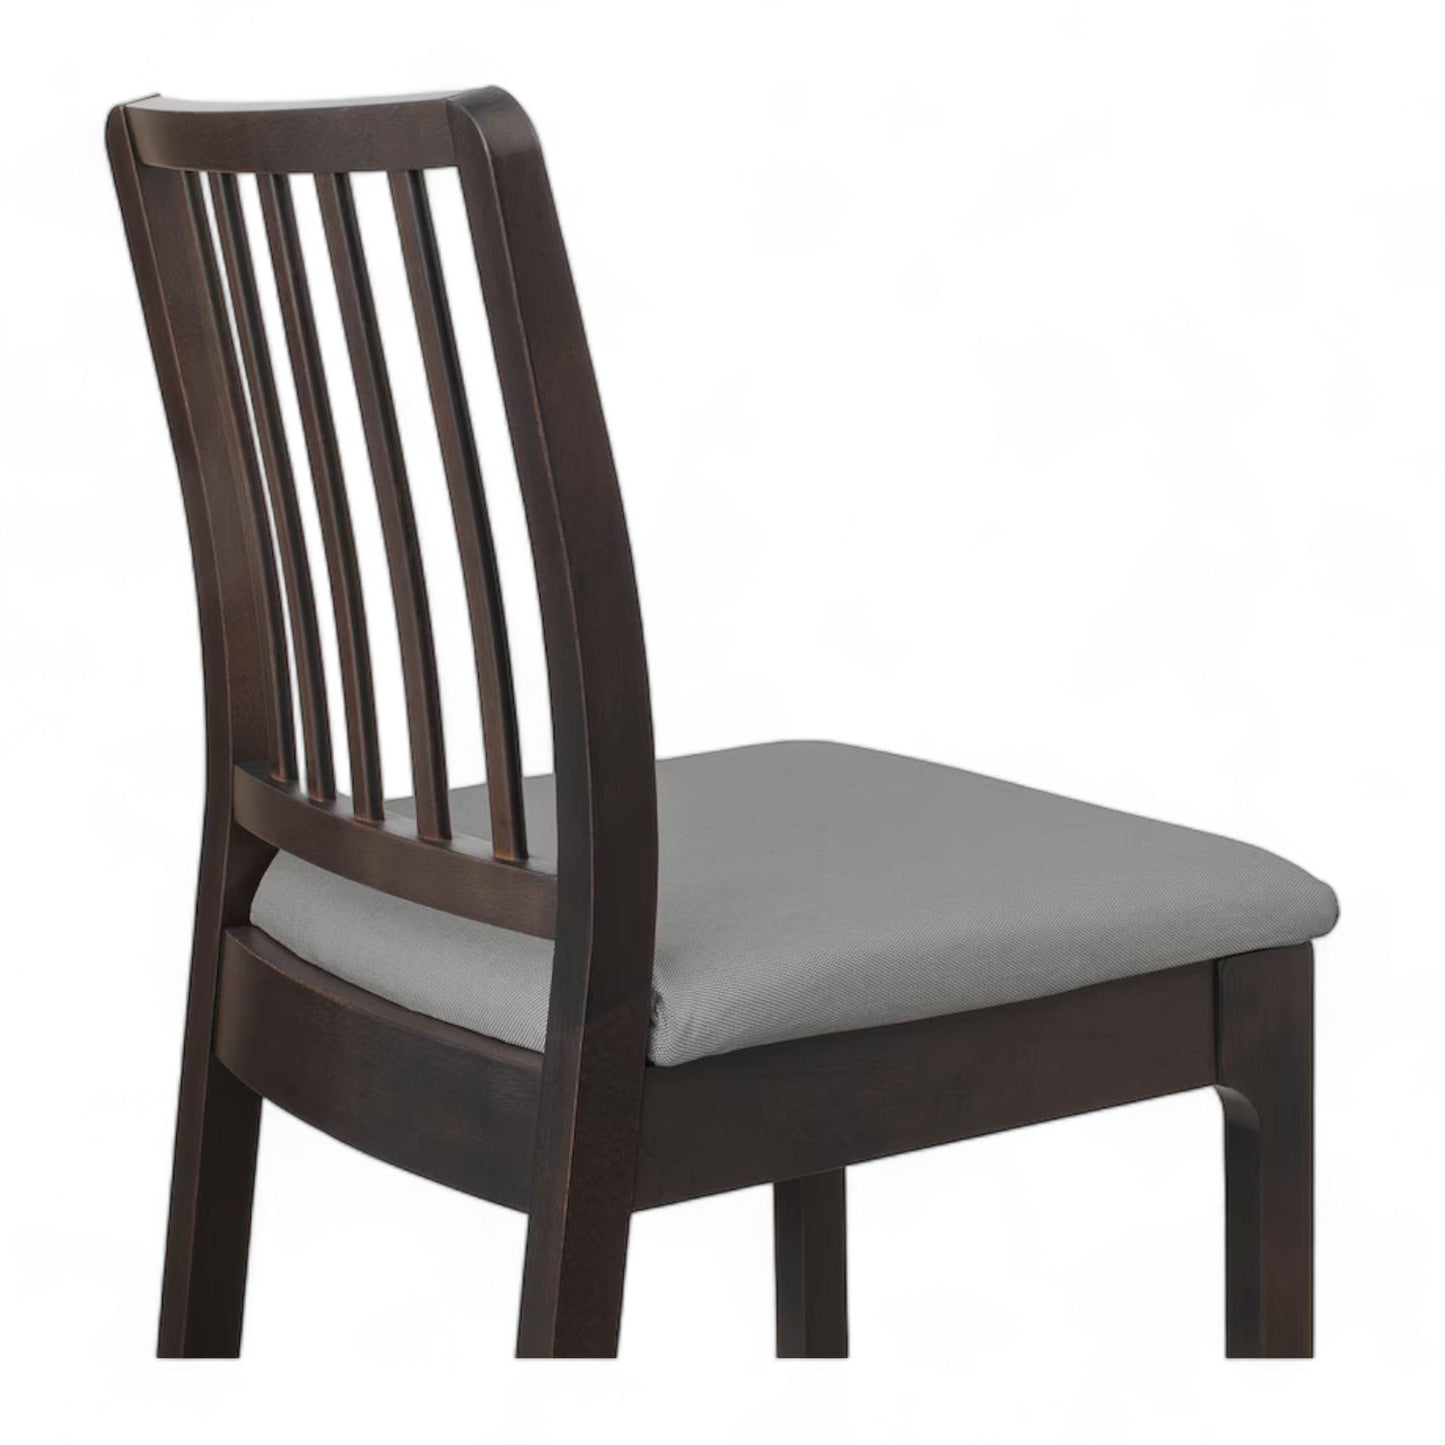 Kvalitetssikret | IKEA Ekedalen barstol i mørkebrun